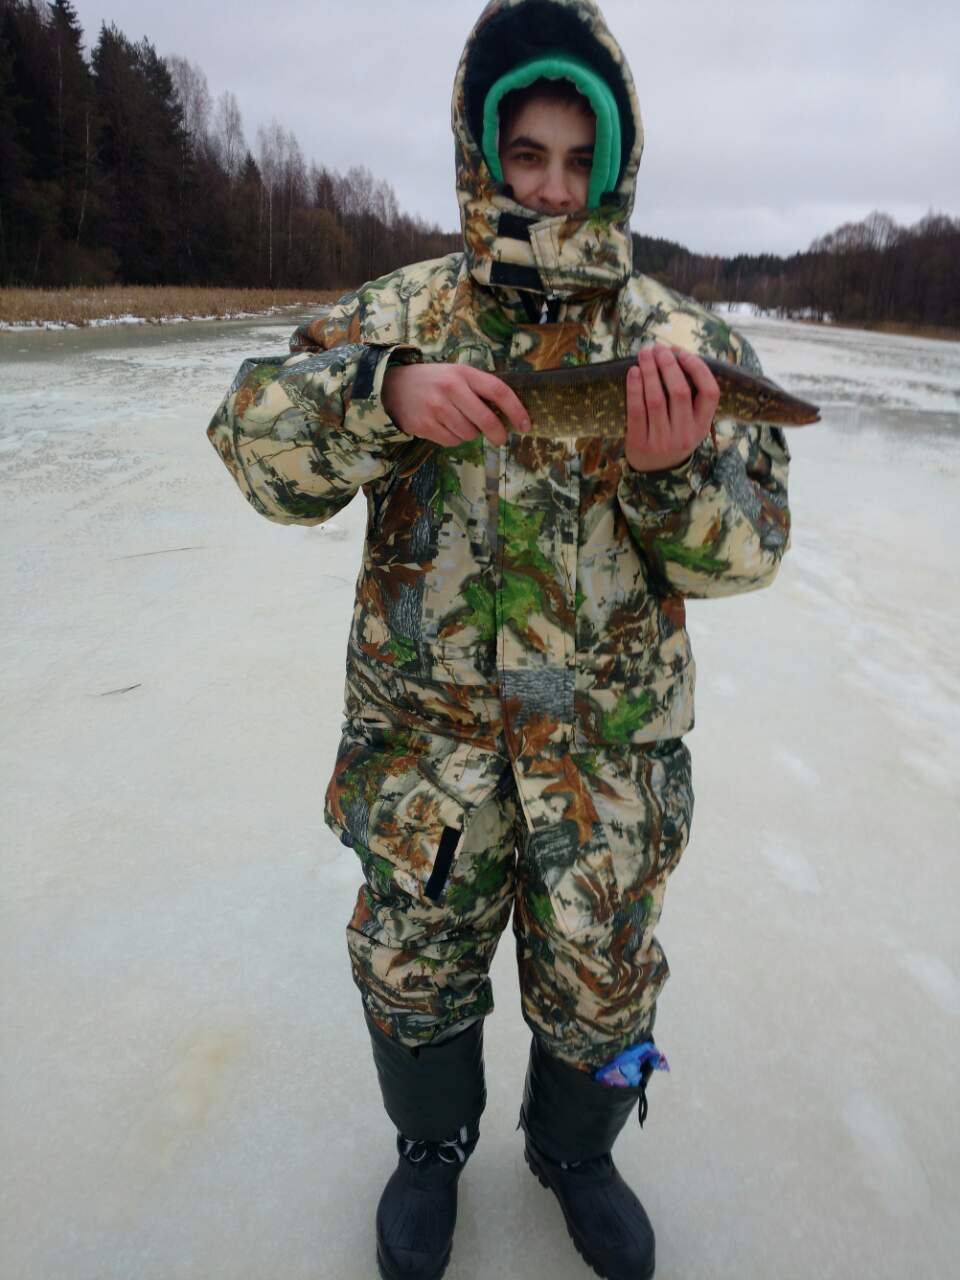  Привет друзья! Не мог не посетить сегодня Вячу ... | Отчеты о рыбалке в Беларуси